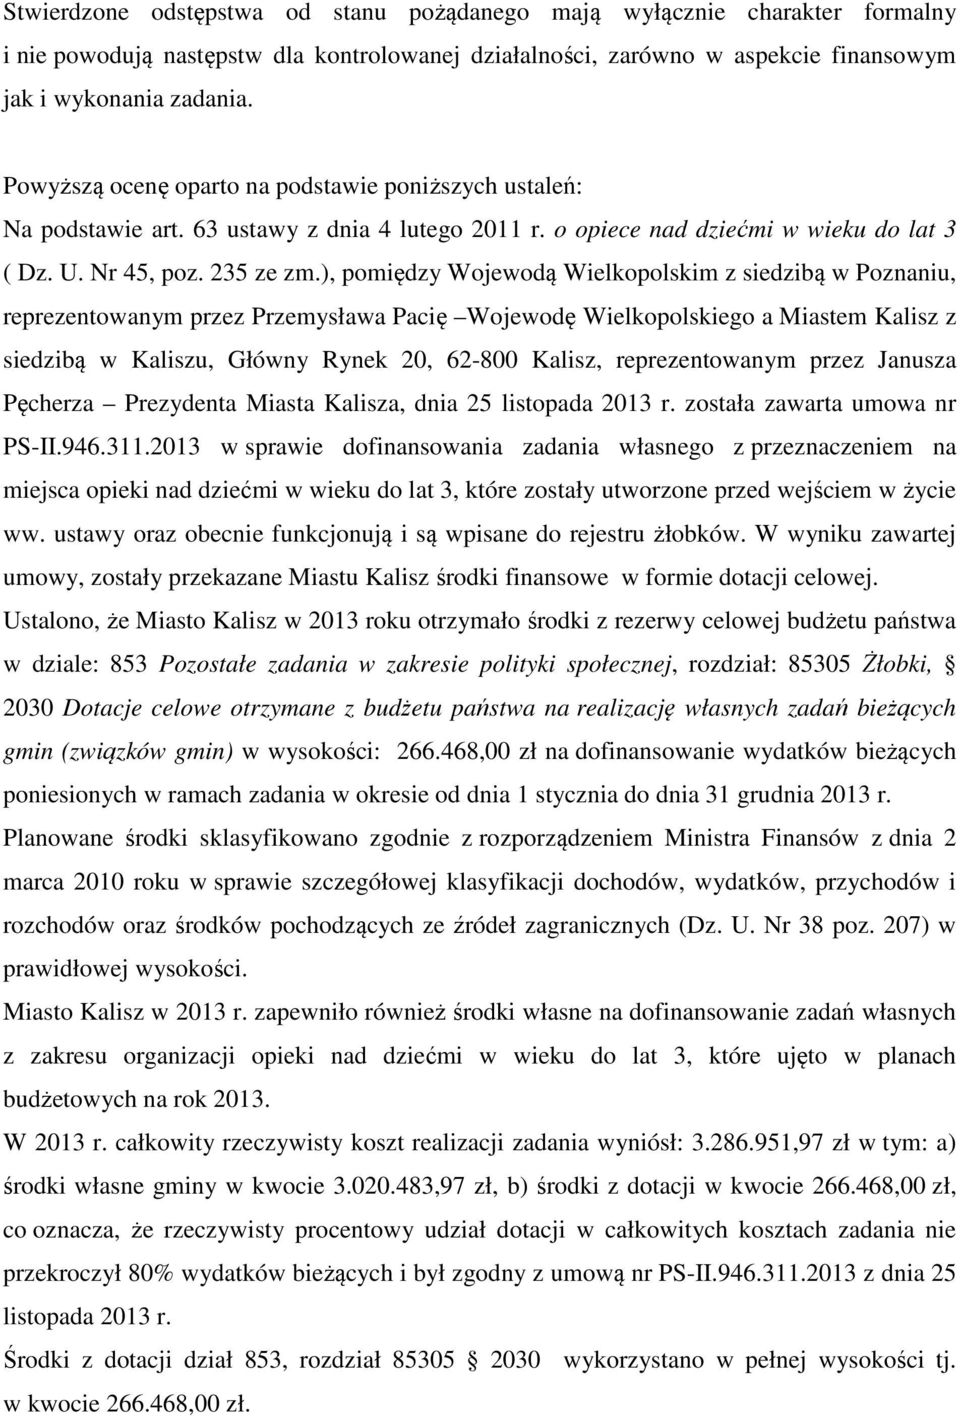 ), pomiędzy Wojewodą Wielkopolskim z siedzibą w Poznaniu, reprezentowanym przez Przemysława Pacię Wojewodę Wielkopolskiego a Miastem Kalisz z siedzibą w Kaliszu, Główny Rynek 20, 62-800 Kalisz,